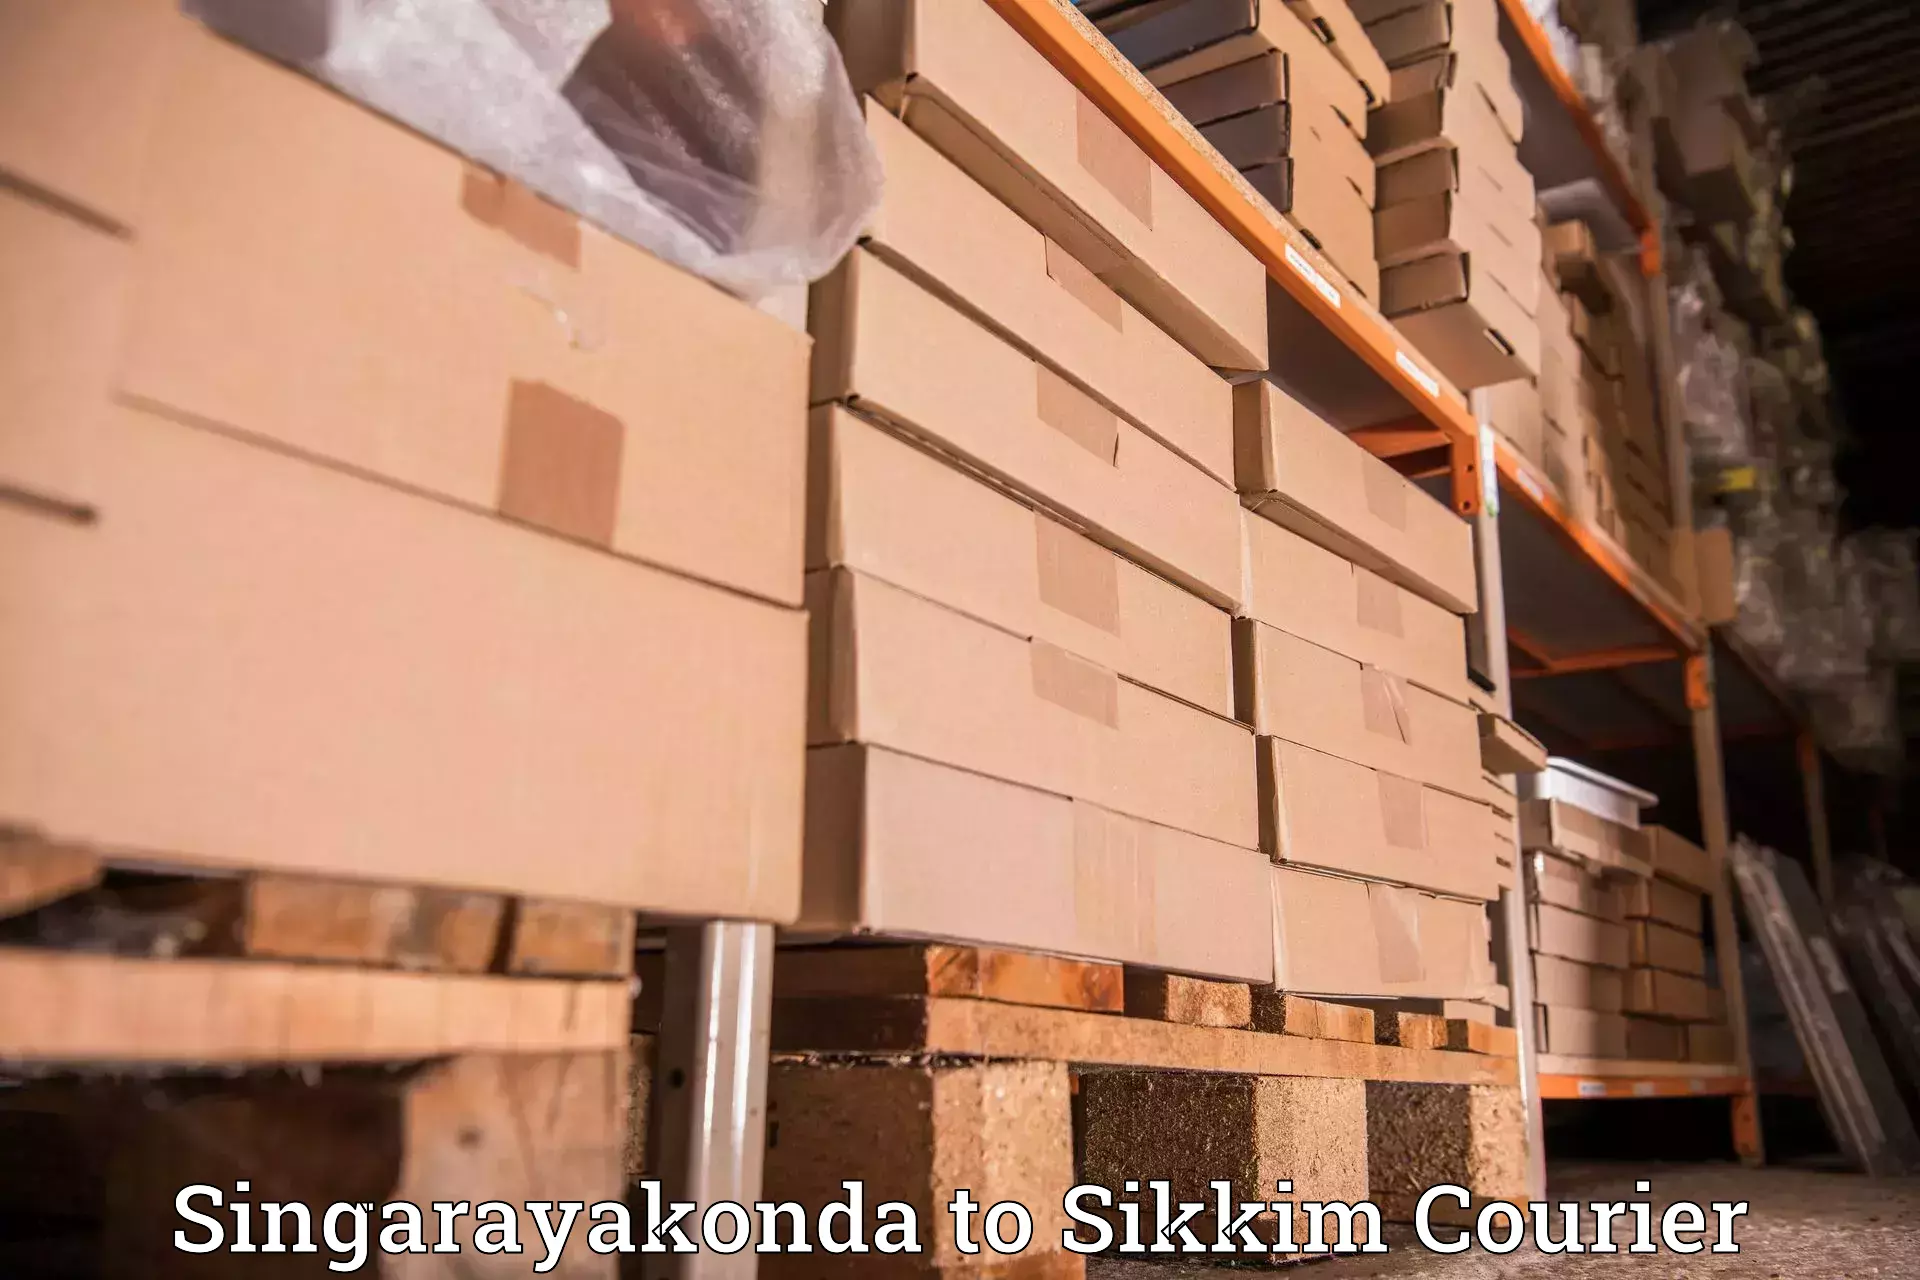 Express logistics service Singarayakonda to Sikkim